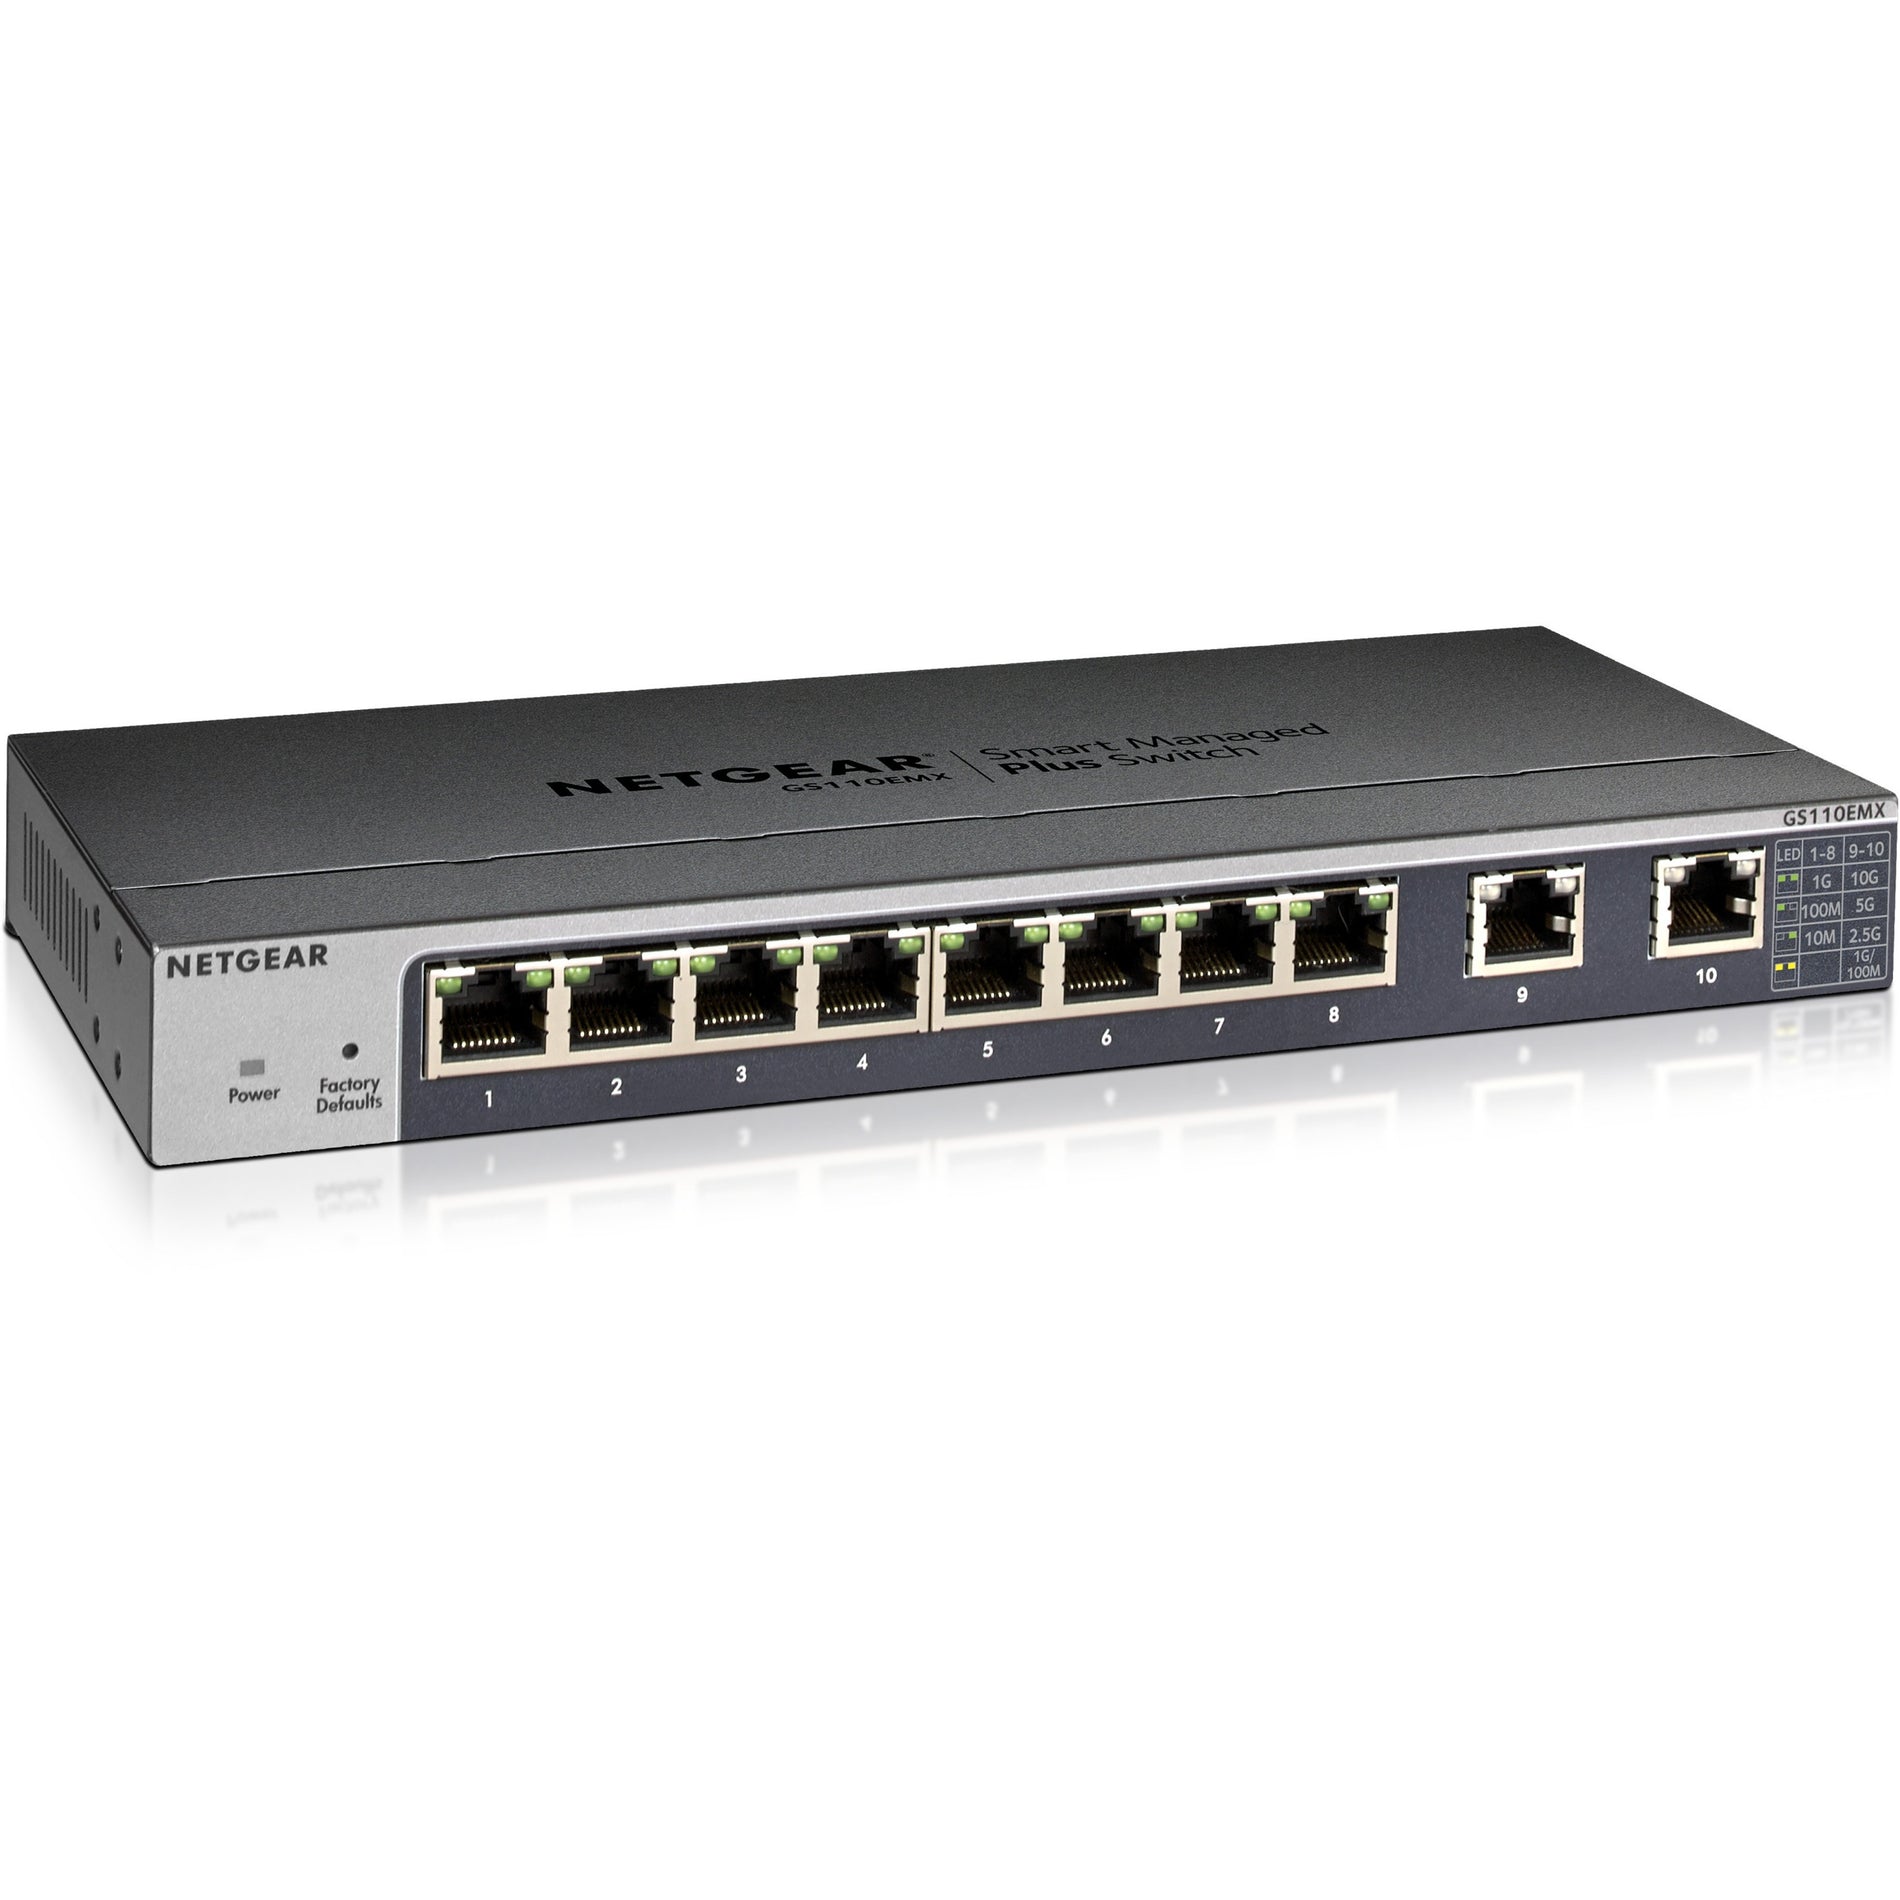 Netgear GS110EMX-100NAS GS110EMX Ethernet Switch, 8-Port Gigabit Ethernet with 2 x 10 Gigabit Ethernet Uplink